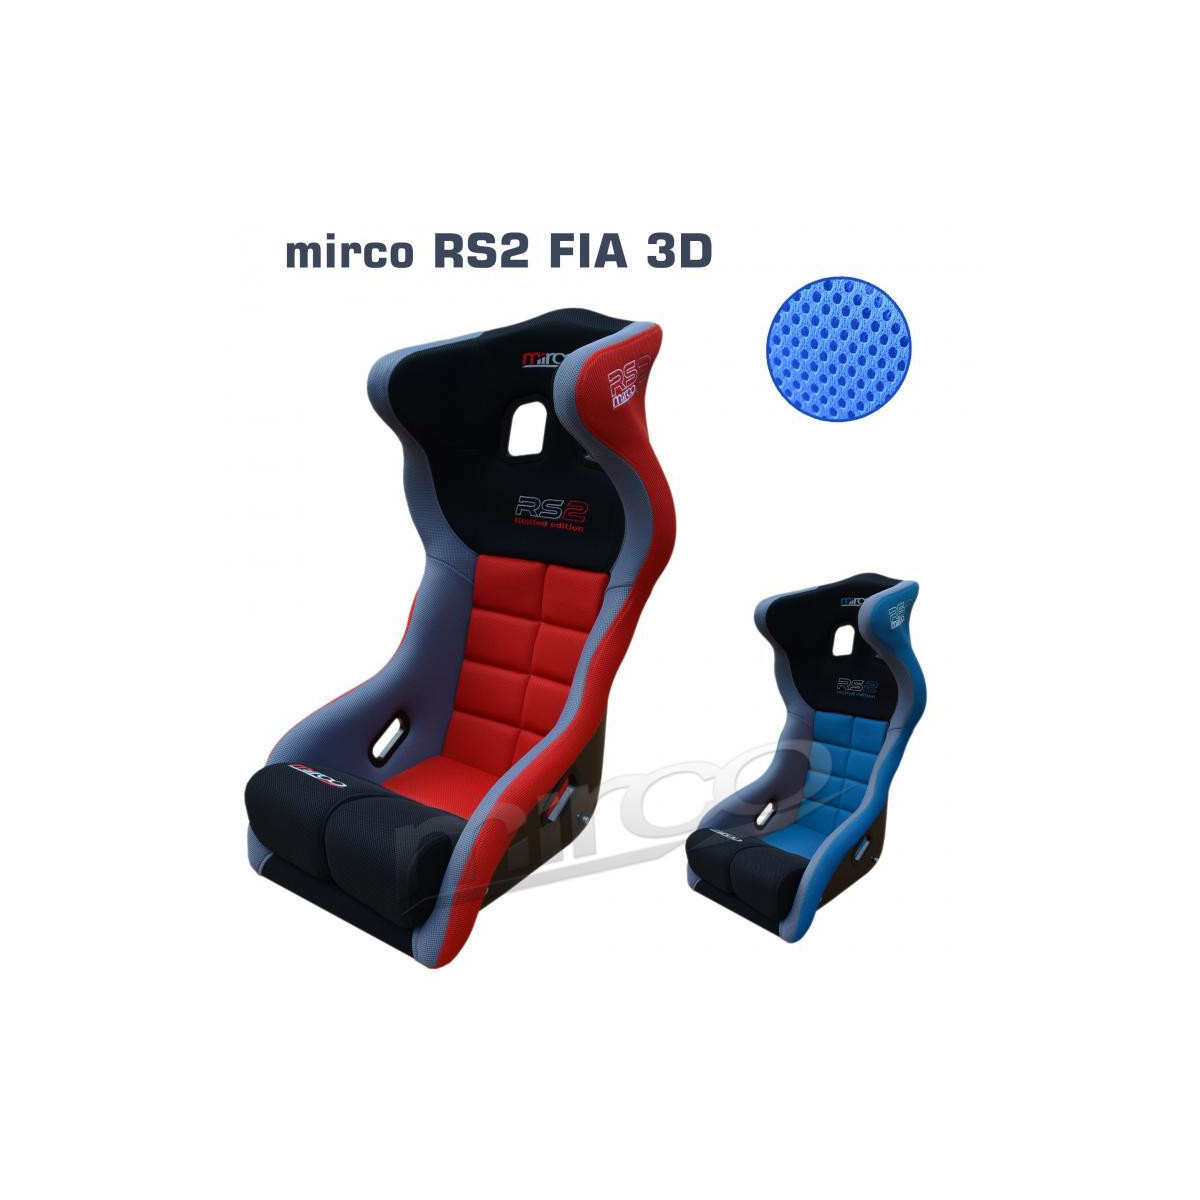 Fotel rajdowy kubełkowy mirco RS2 FIA NOWY DESIGN